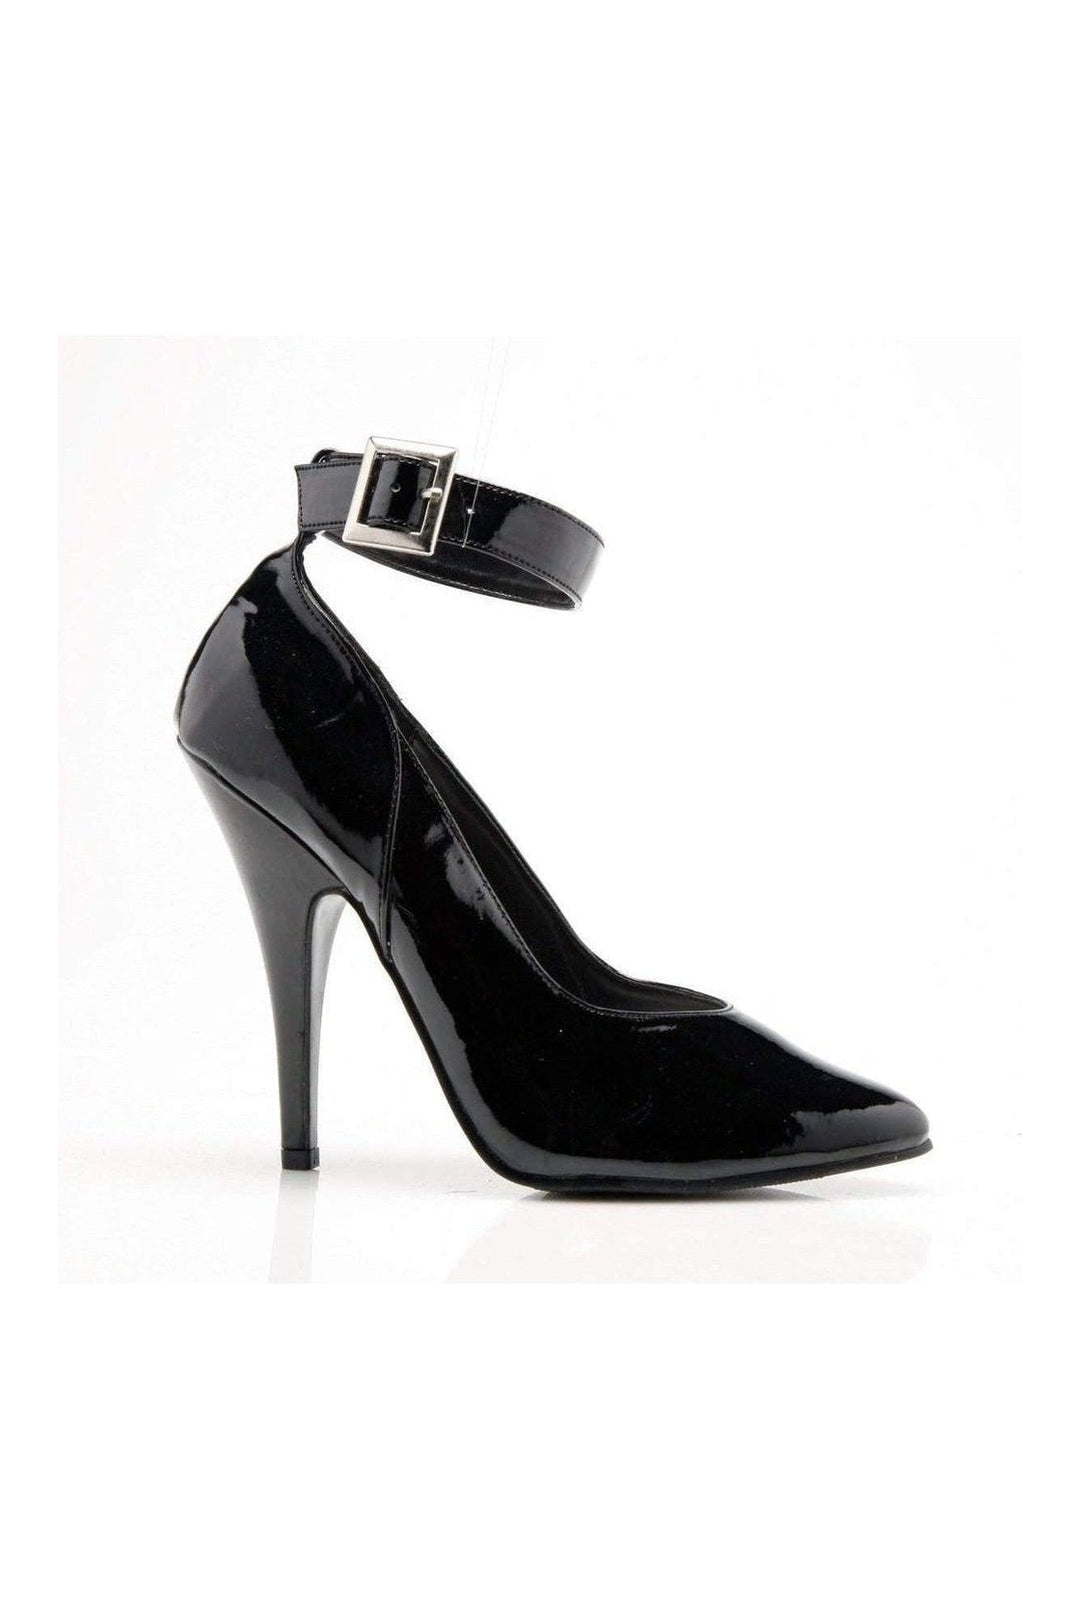 8221 Pump | Black Patent-Pumps- Stripper Shoes at SEXYSHOES.COM